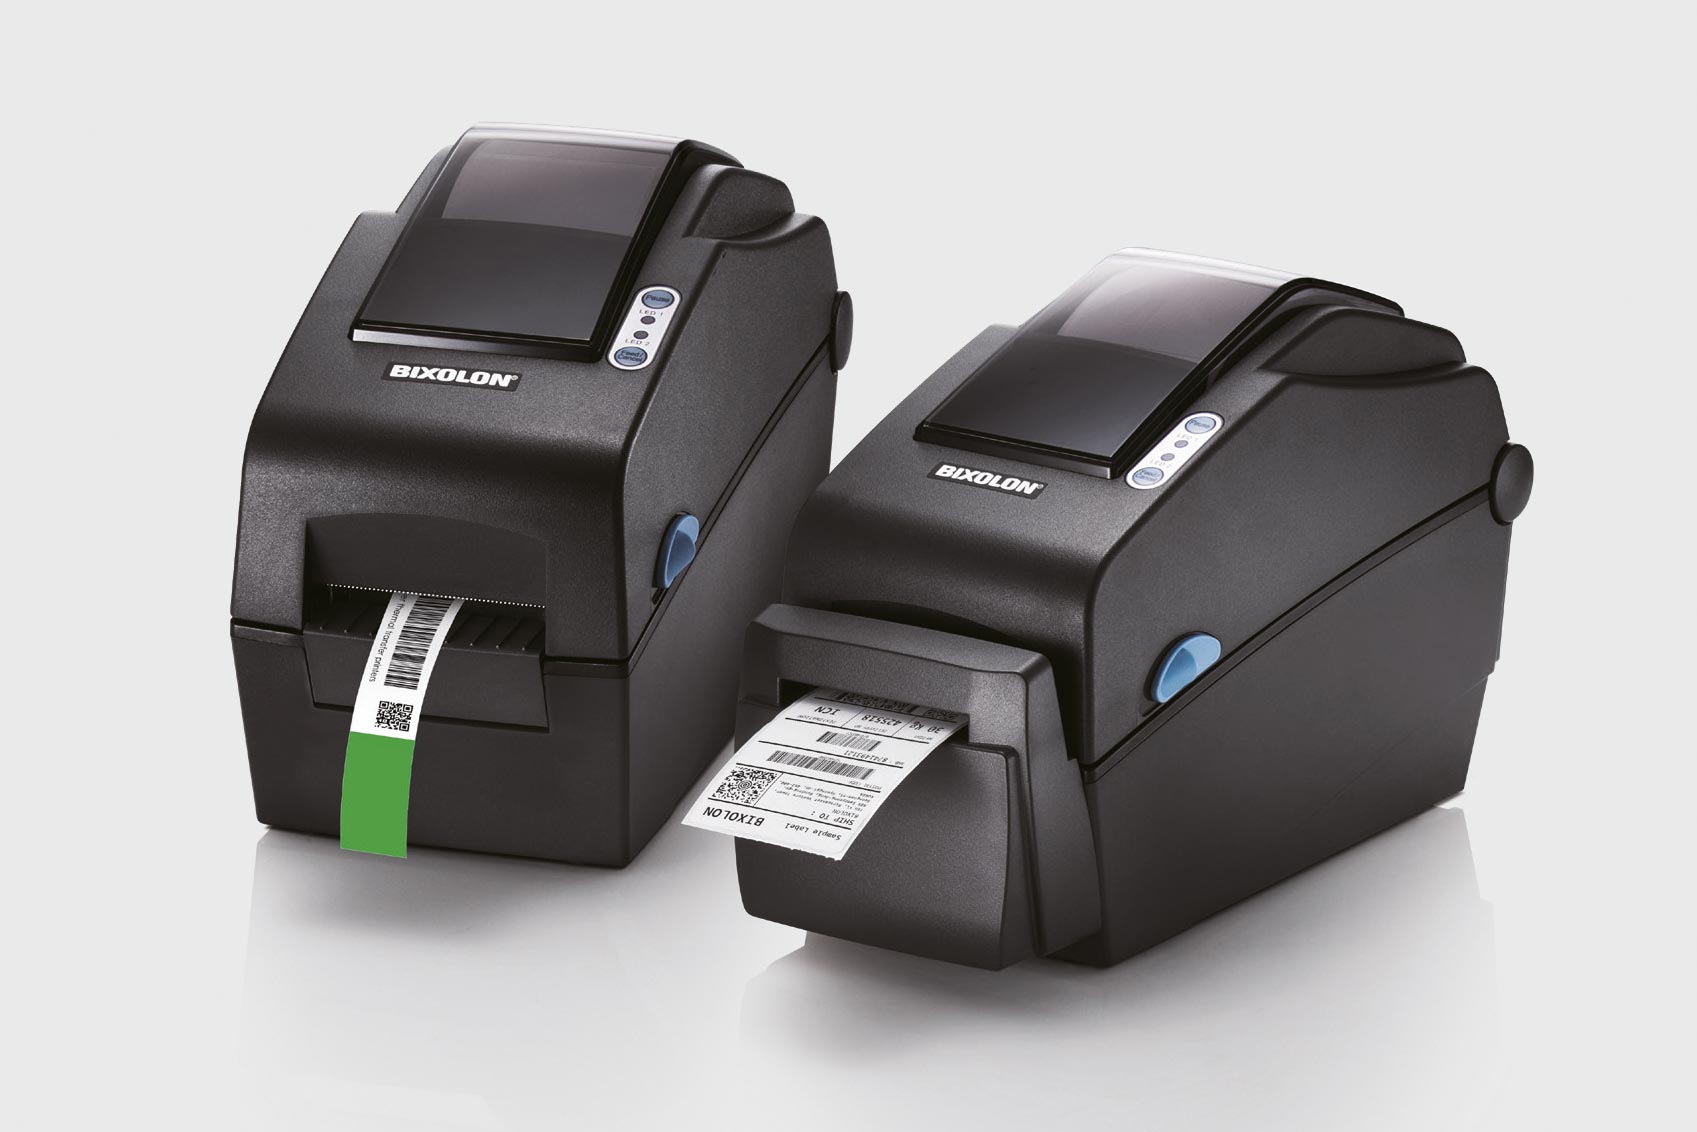 [Translate to English:] Darstellung der zwei Etikettendrucker SLP-DX220 von Bixolon mit schwarzem Gehäuse vor grauem Hintergrund